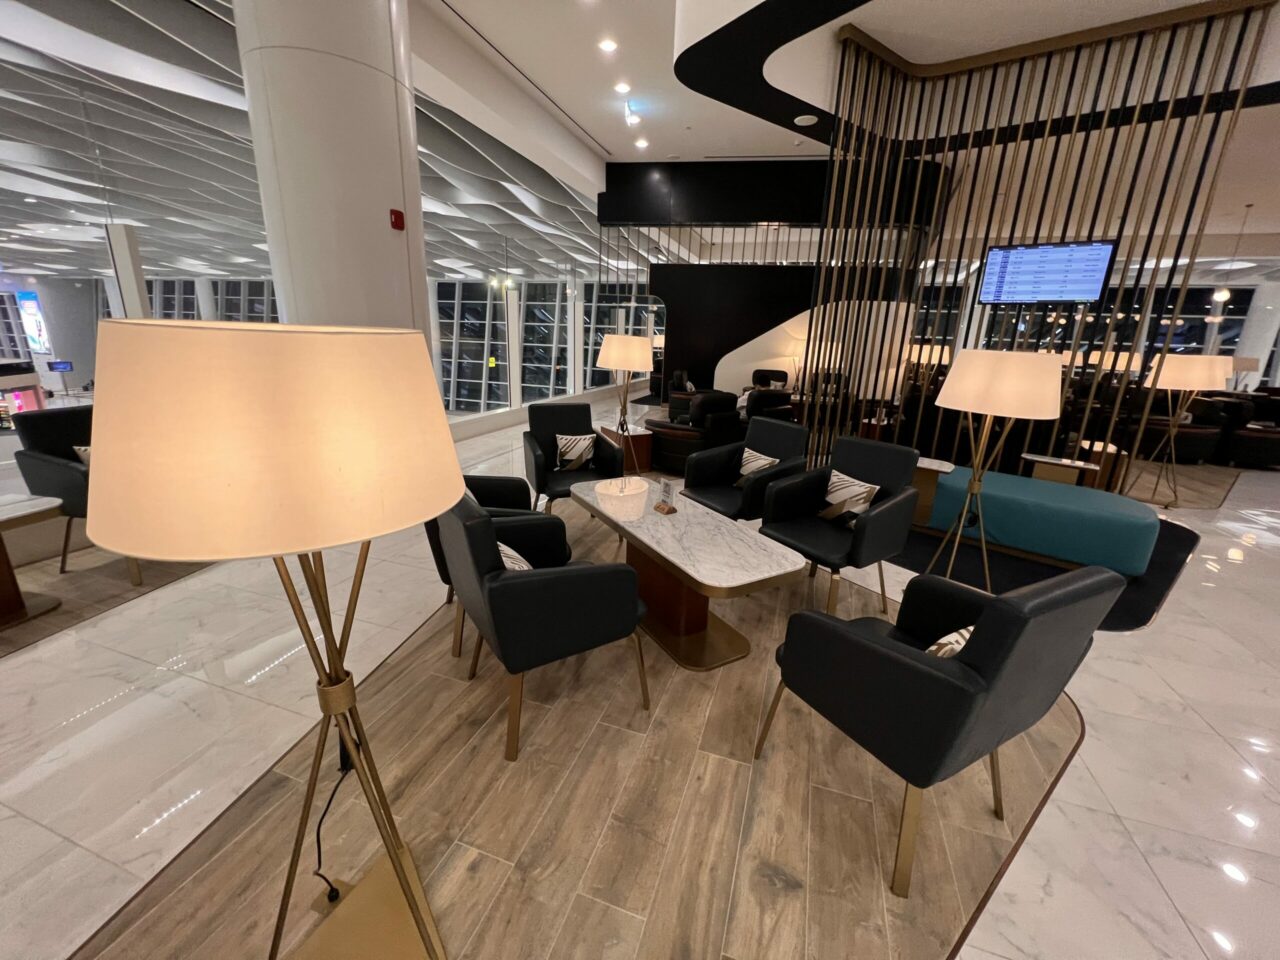 Gulf Air Lounge space